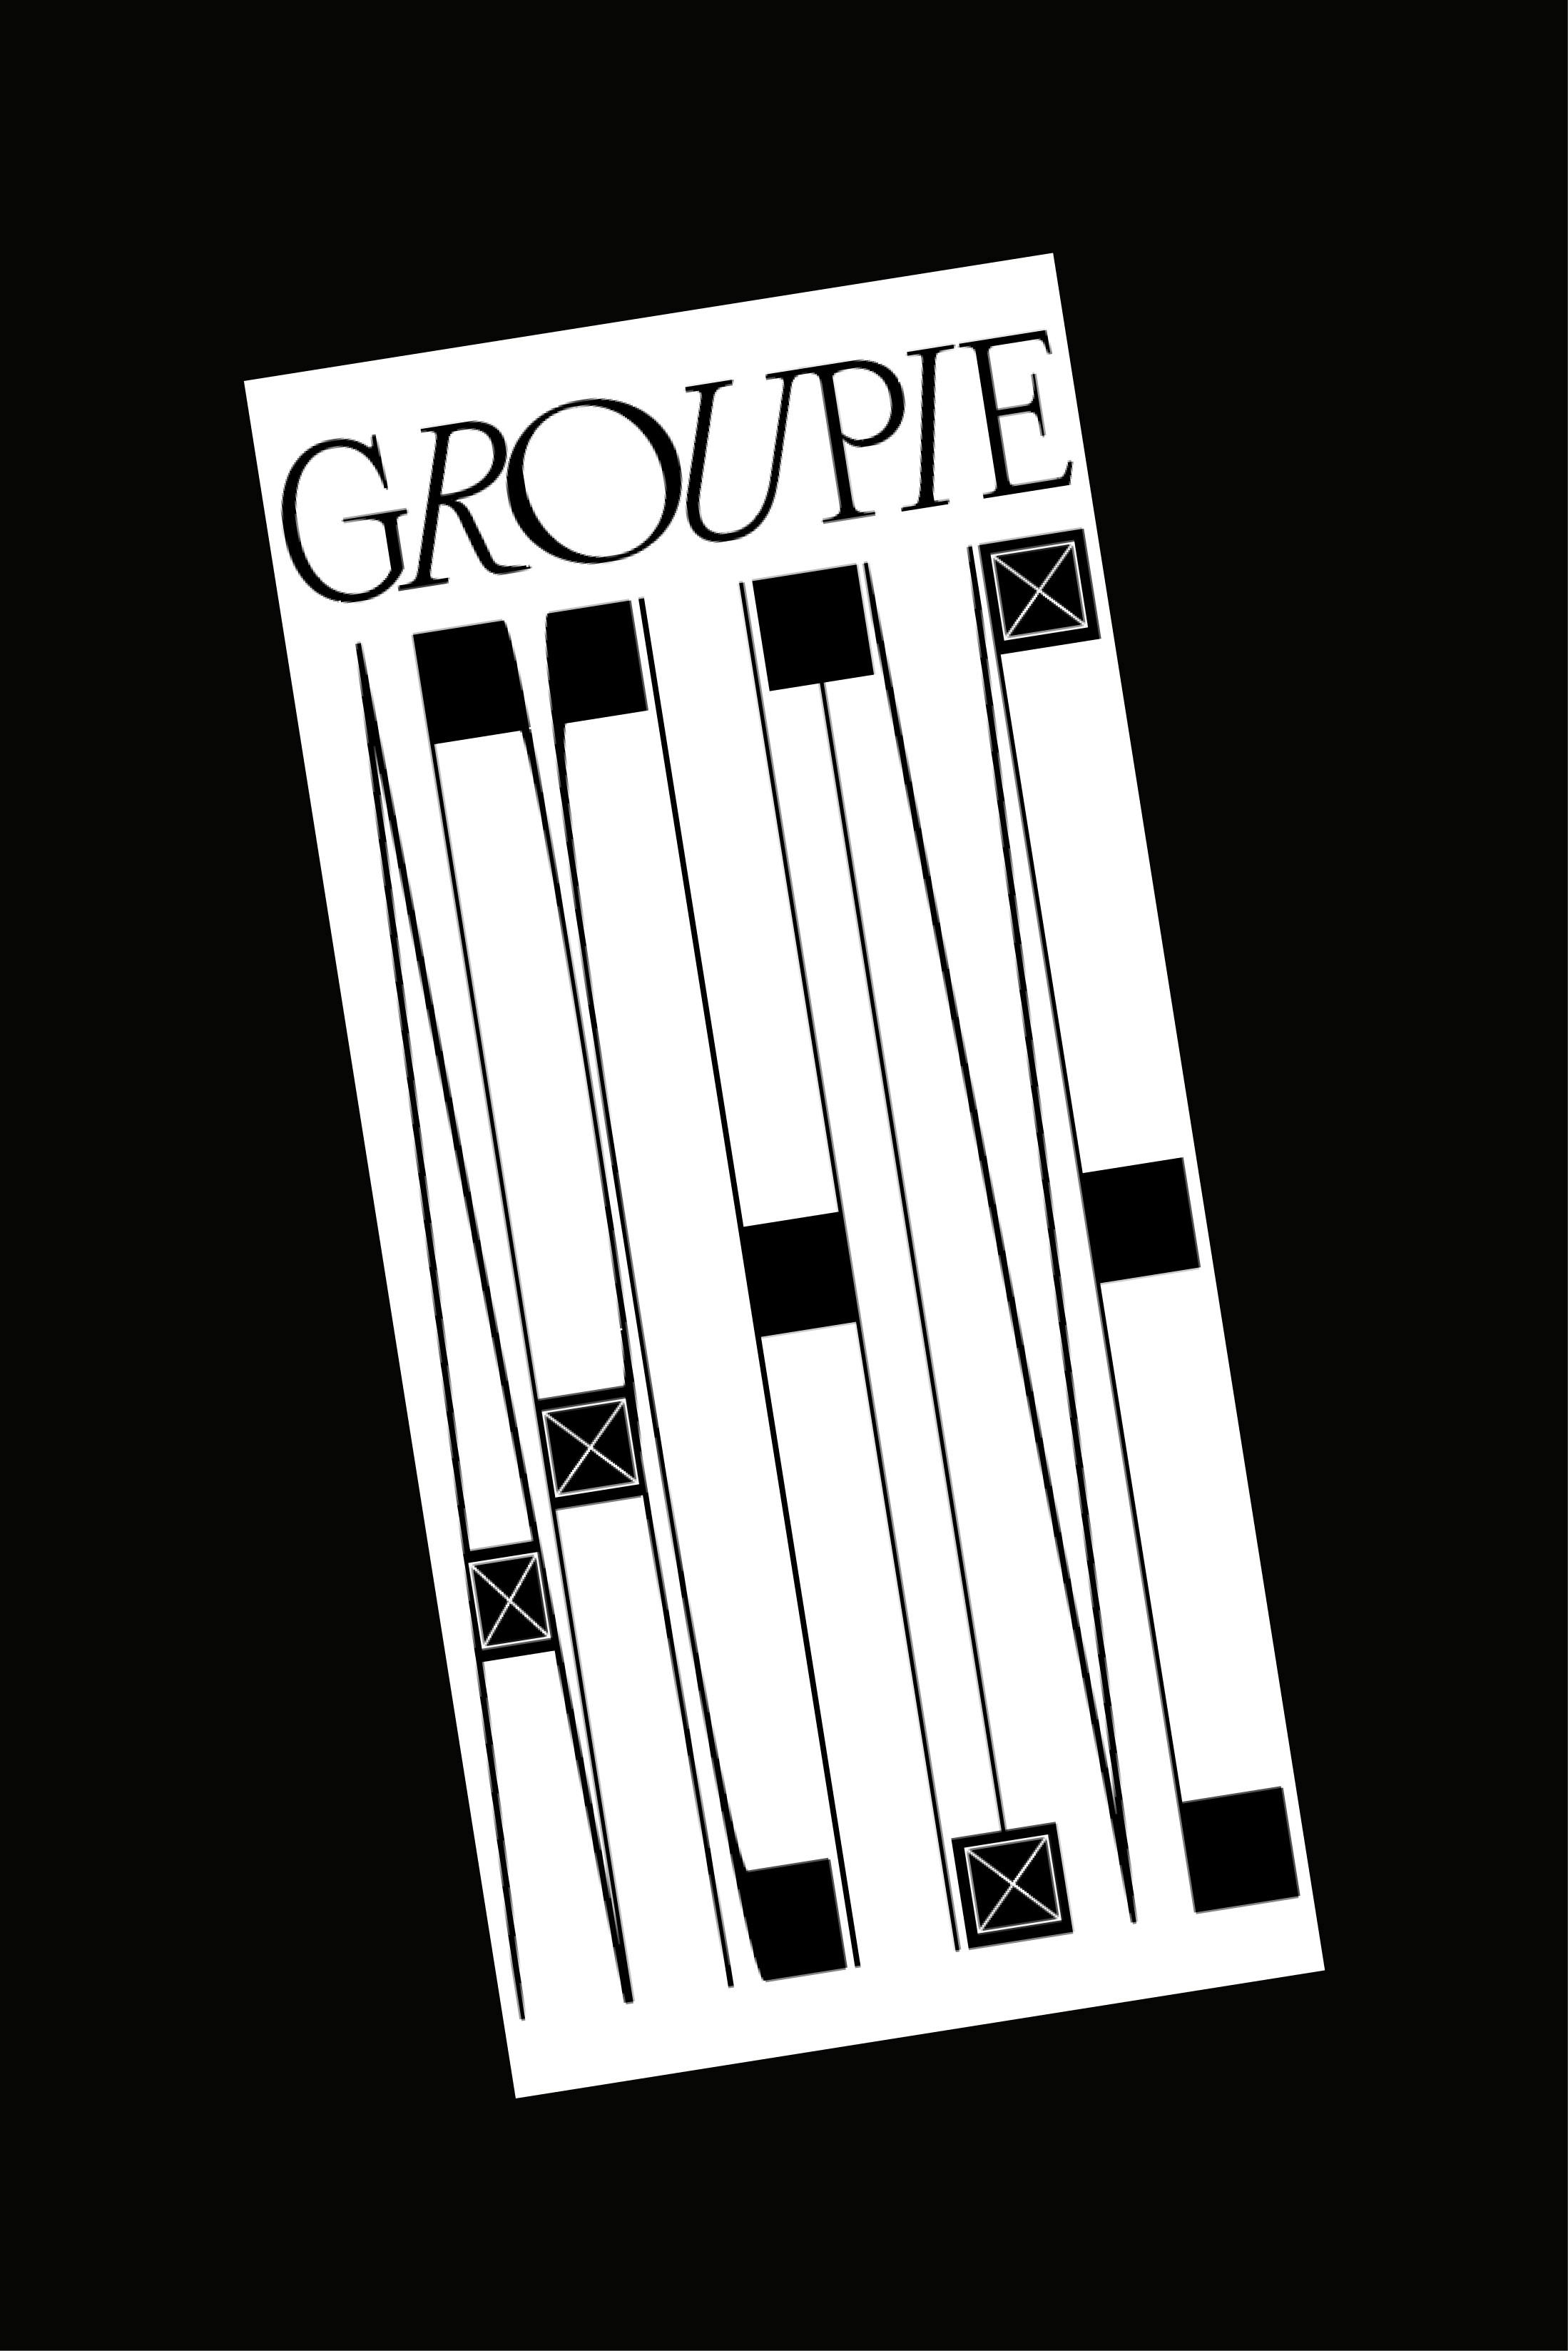 Groupie Archive [LOGO] 